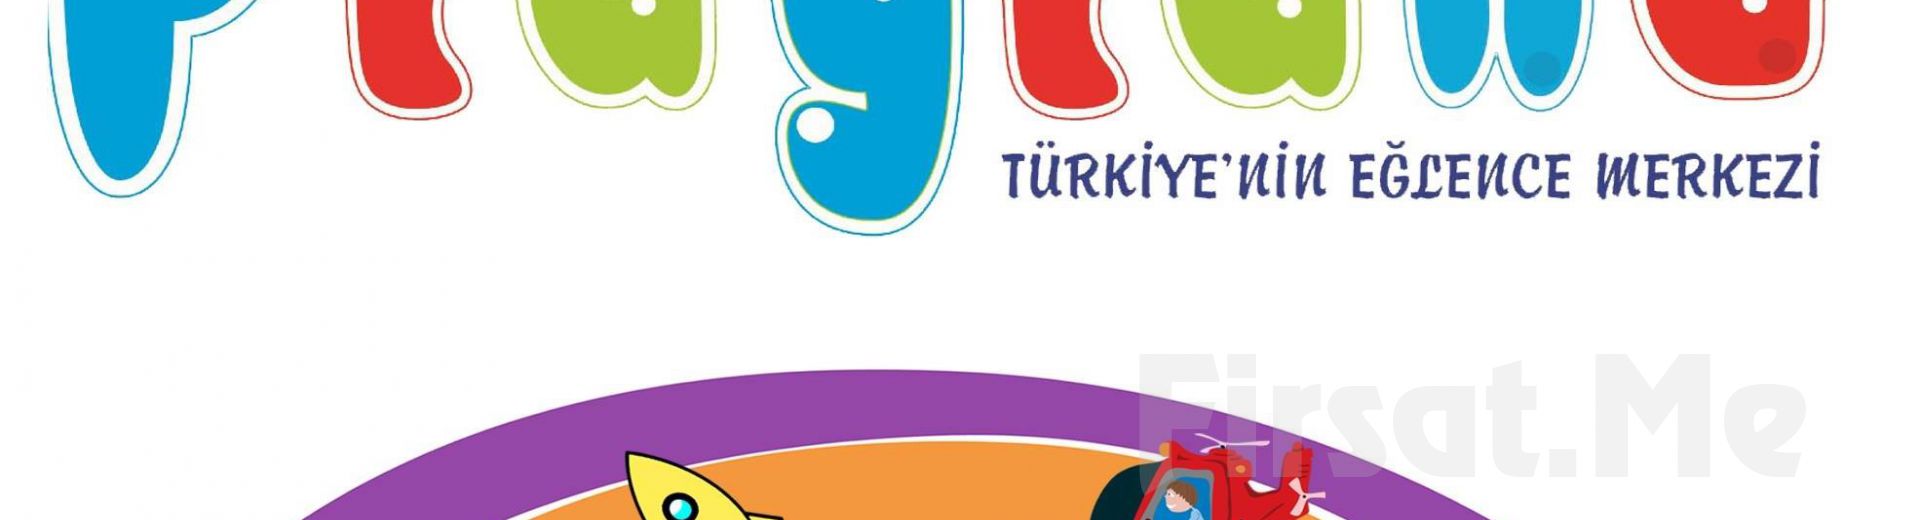 Playland’in Tüm Türkiye’deki Şubelerinde Geçerli Oyun Kartları